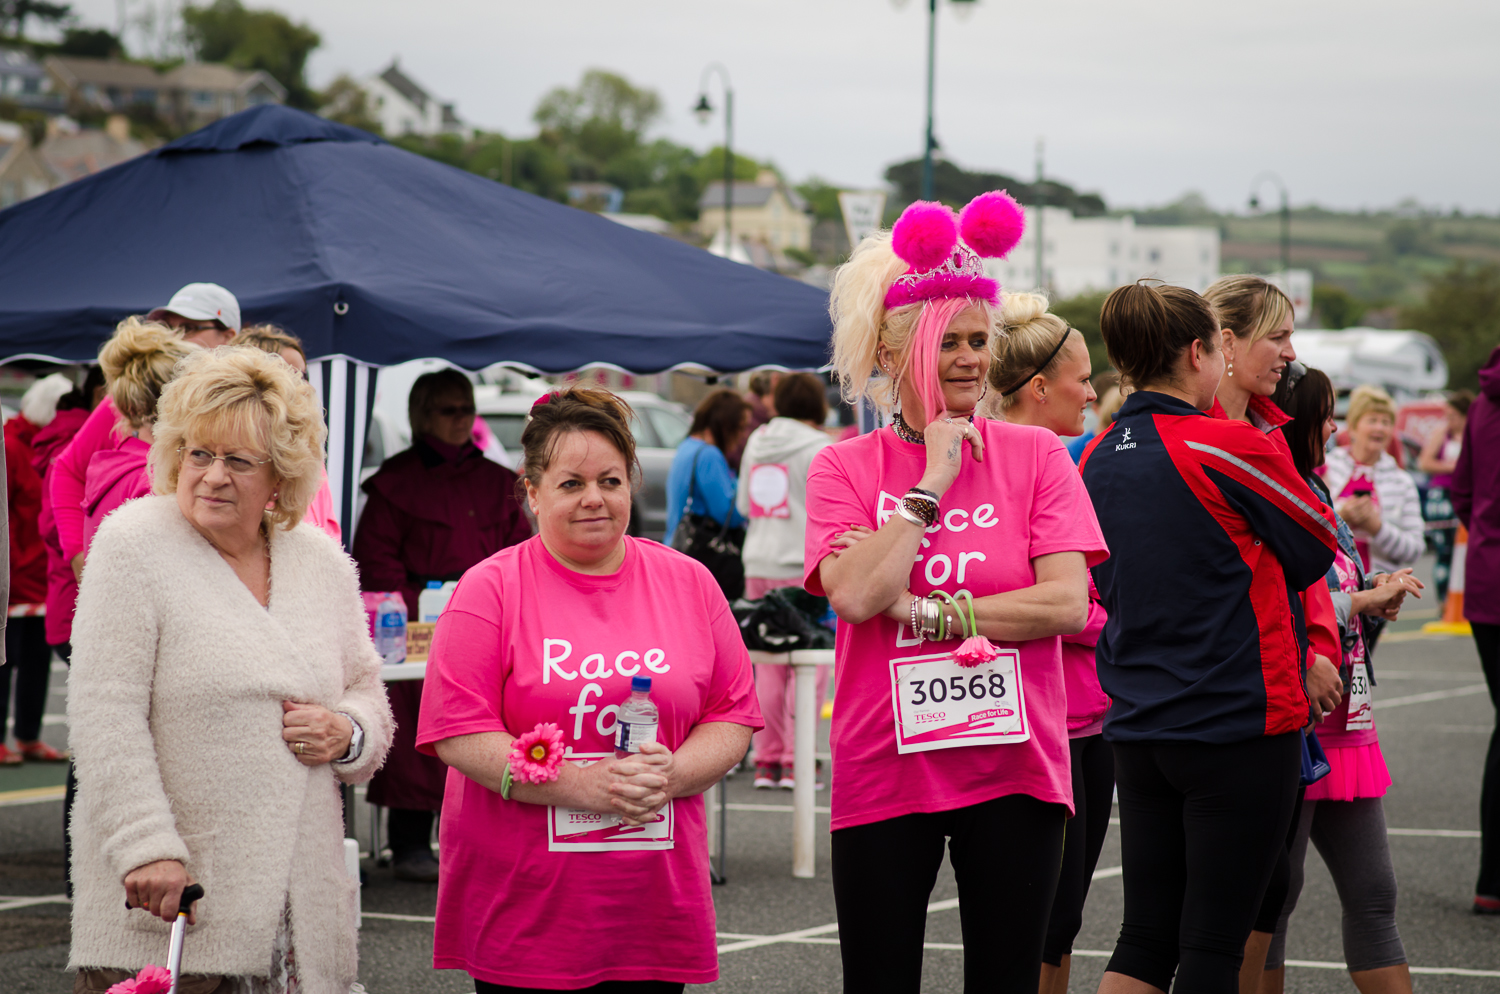 Race for life blog 2015-7.jpg